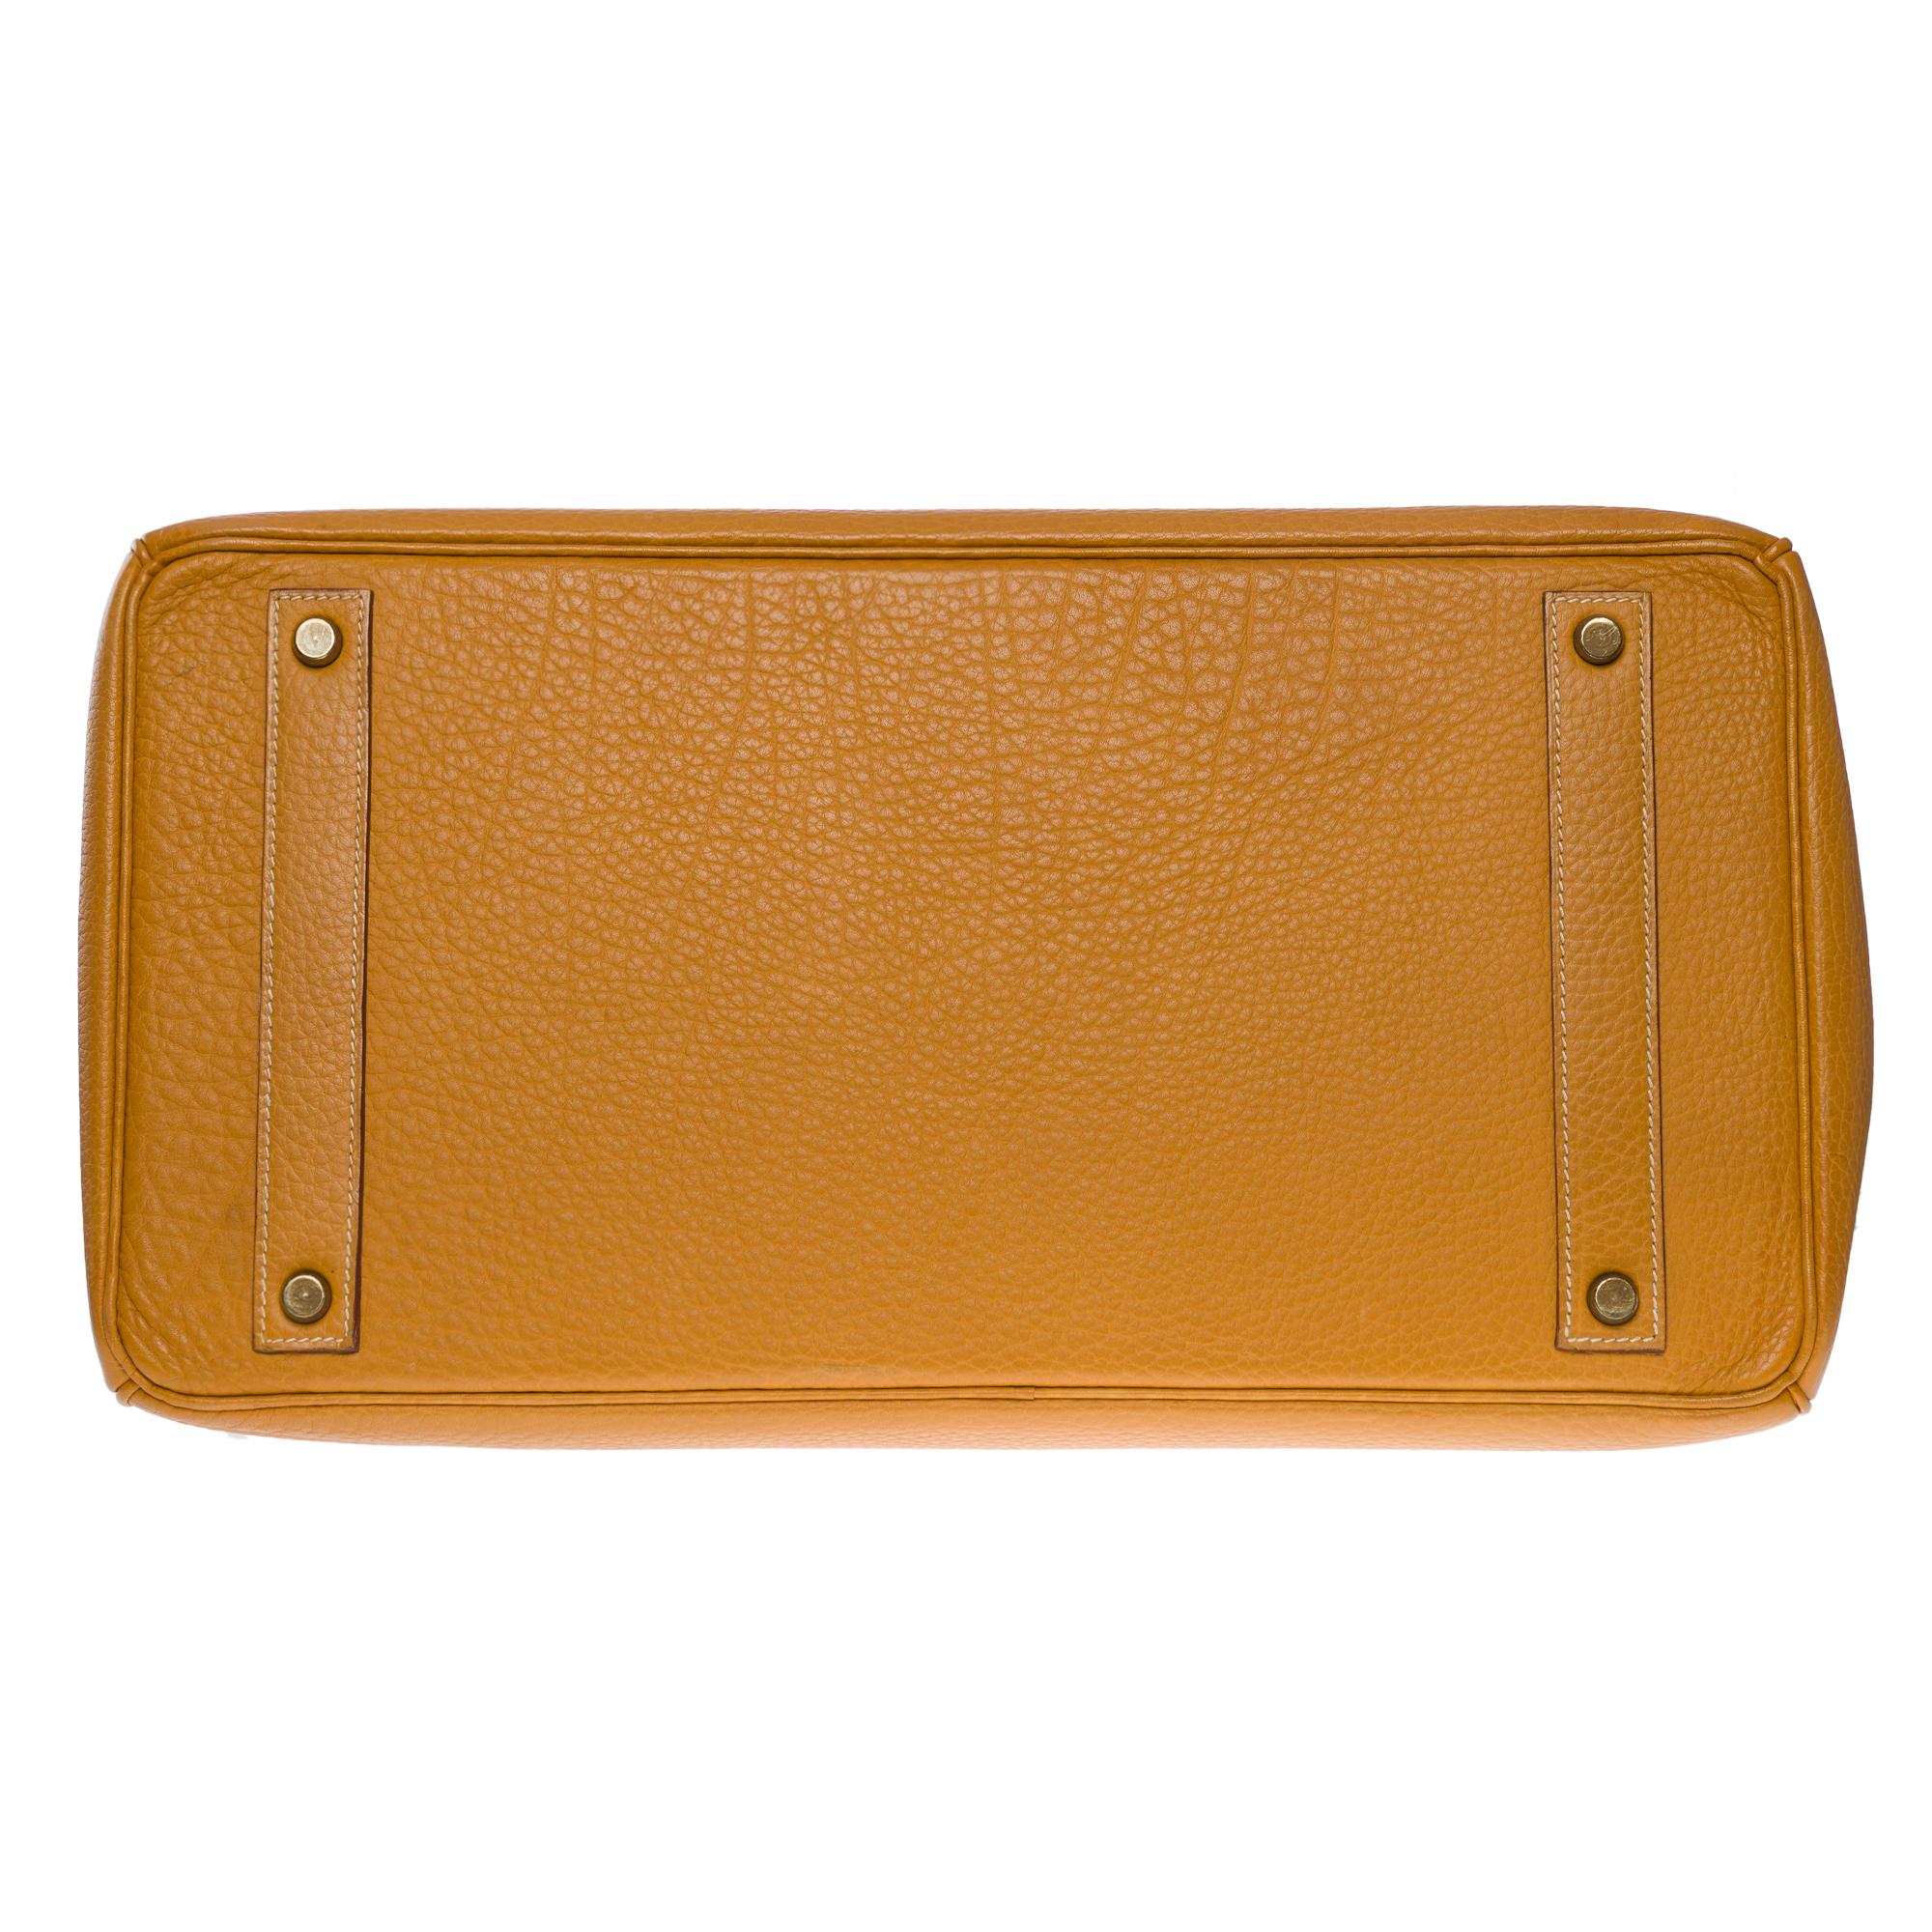 Fantastic Hermes Birkin 40 handbag in Gold Fjord leather, GHW 2